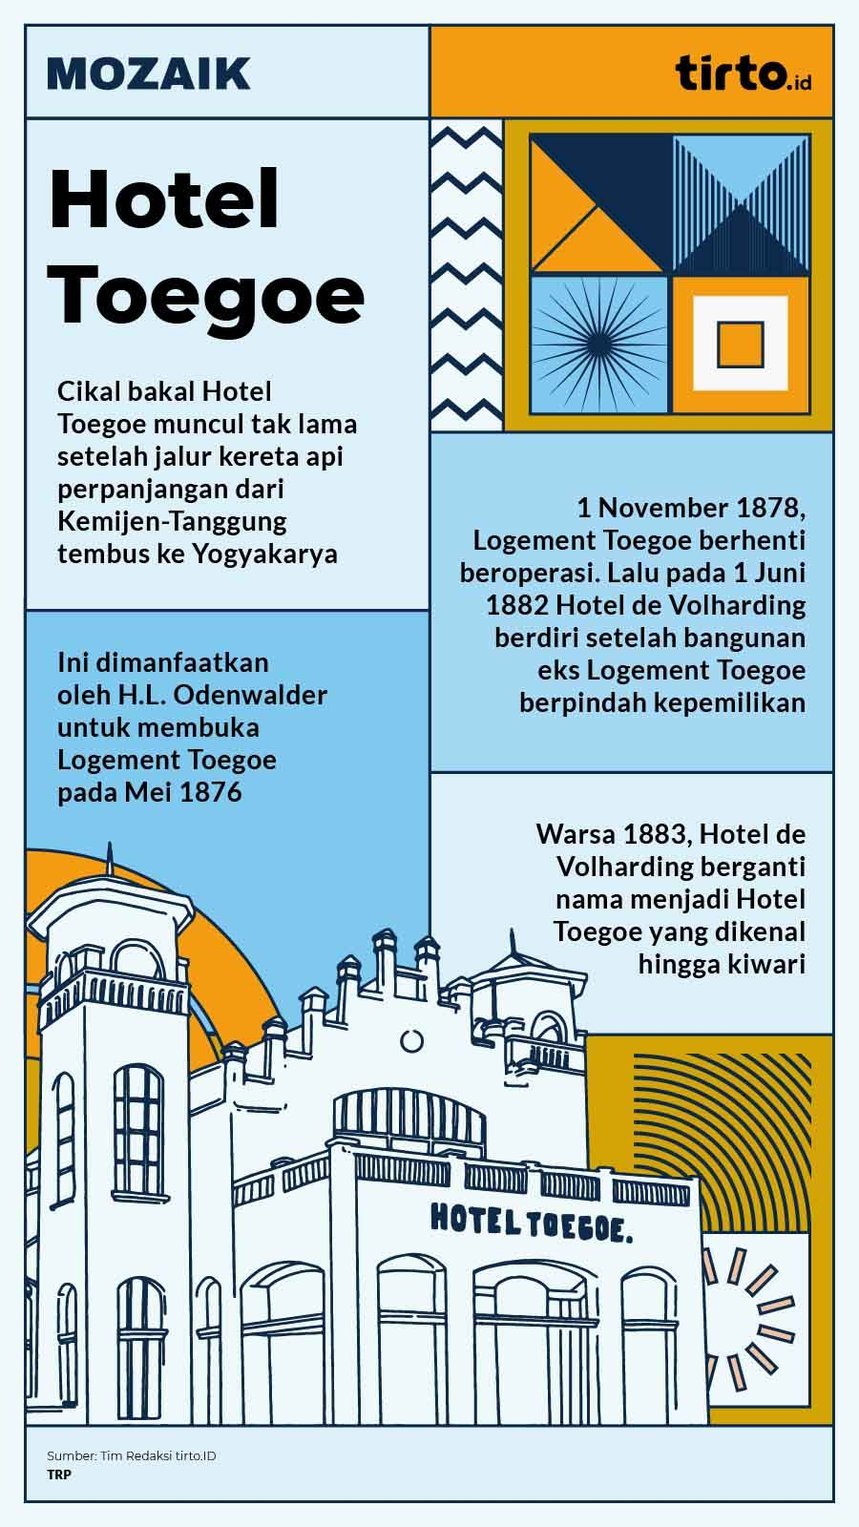 Infografik Mozaik Hotel Toegoe